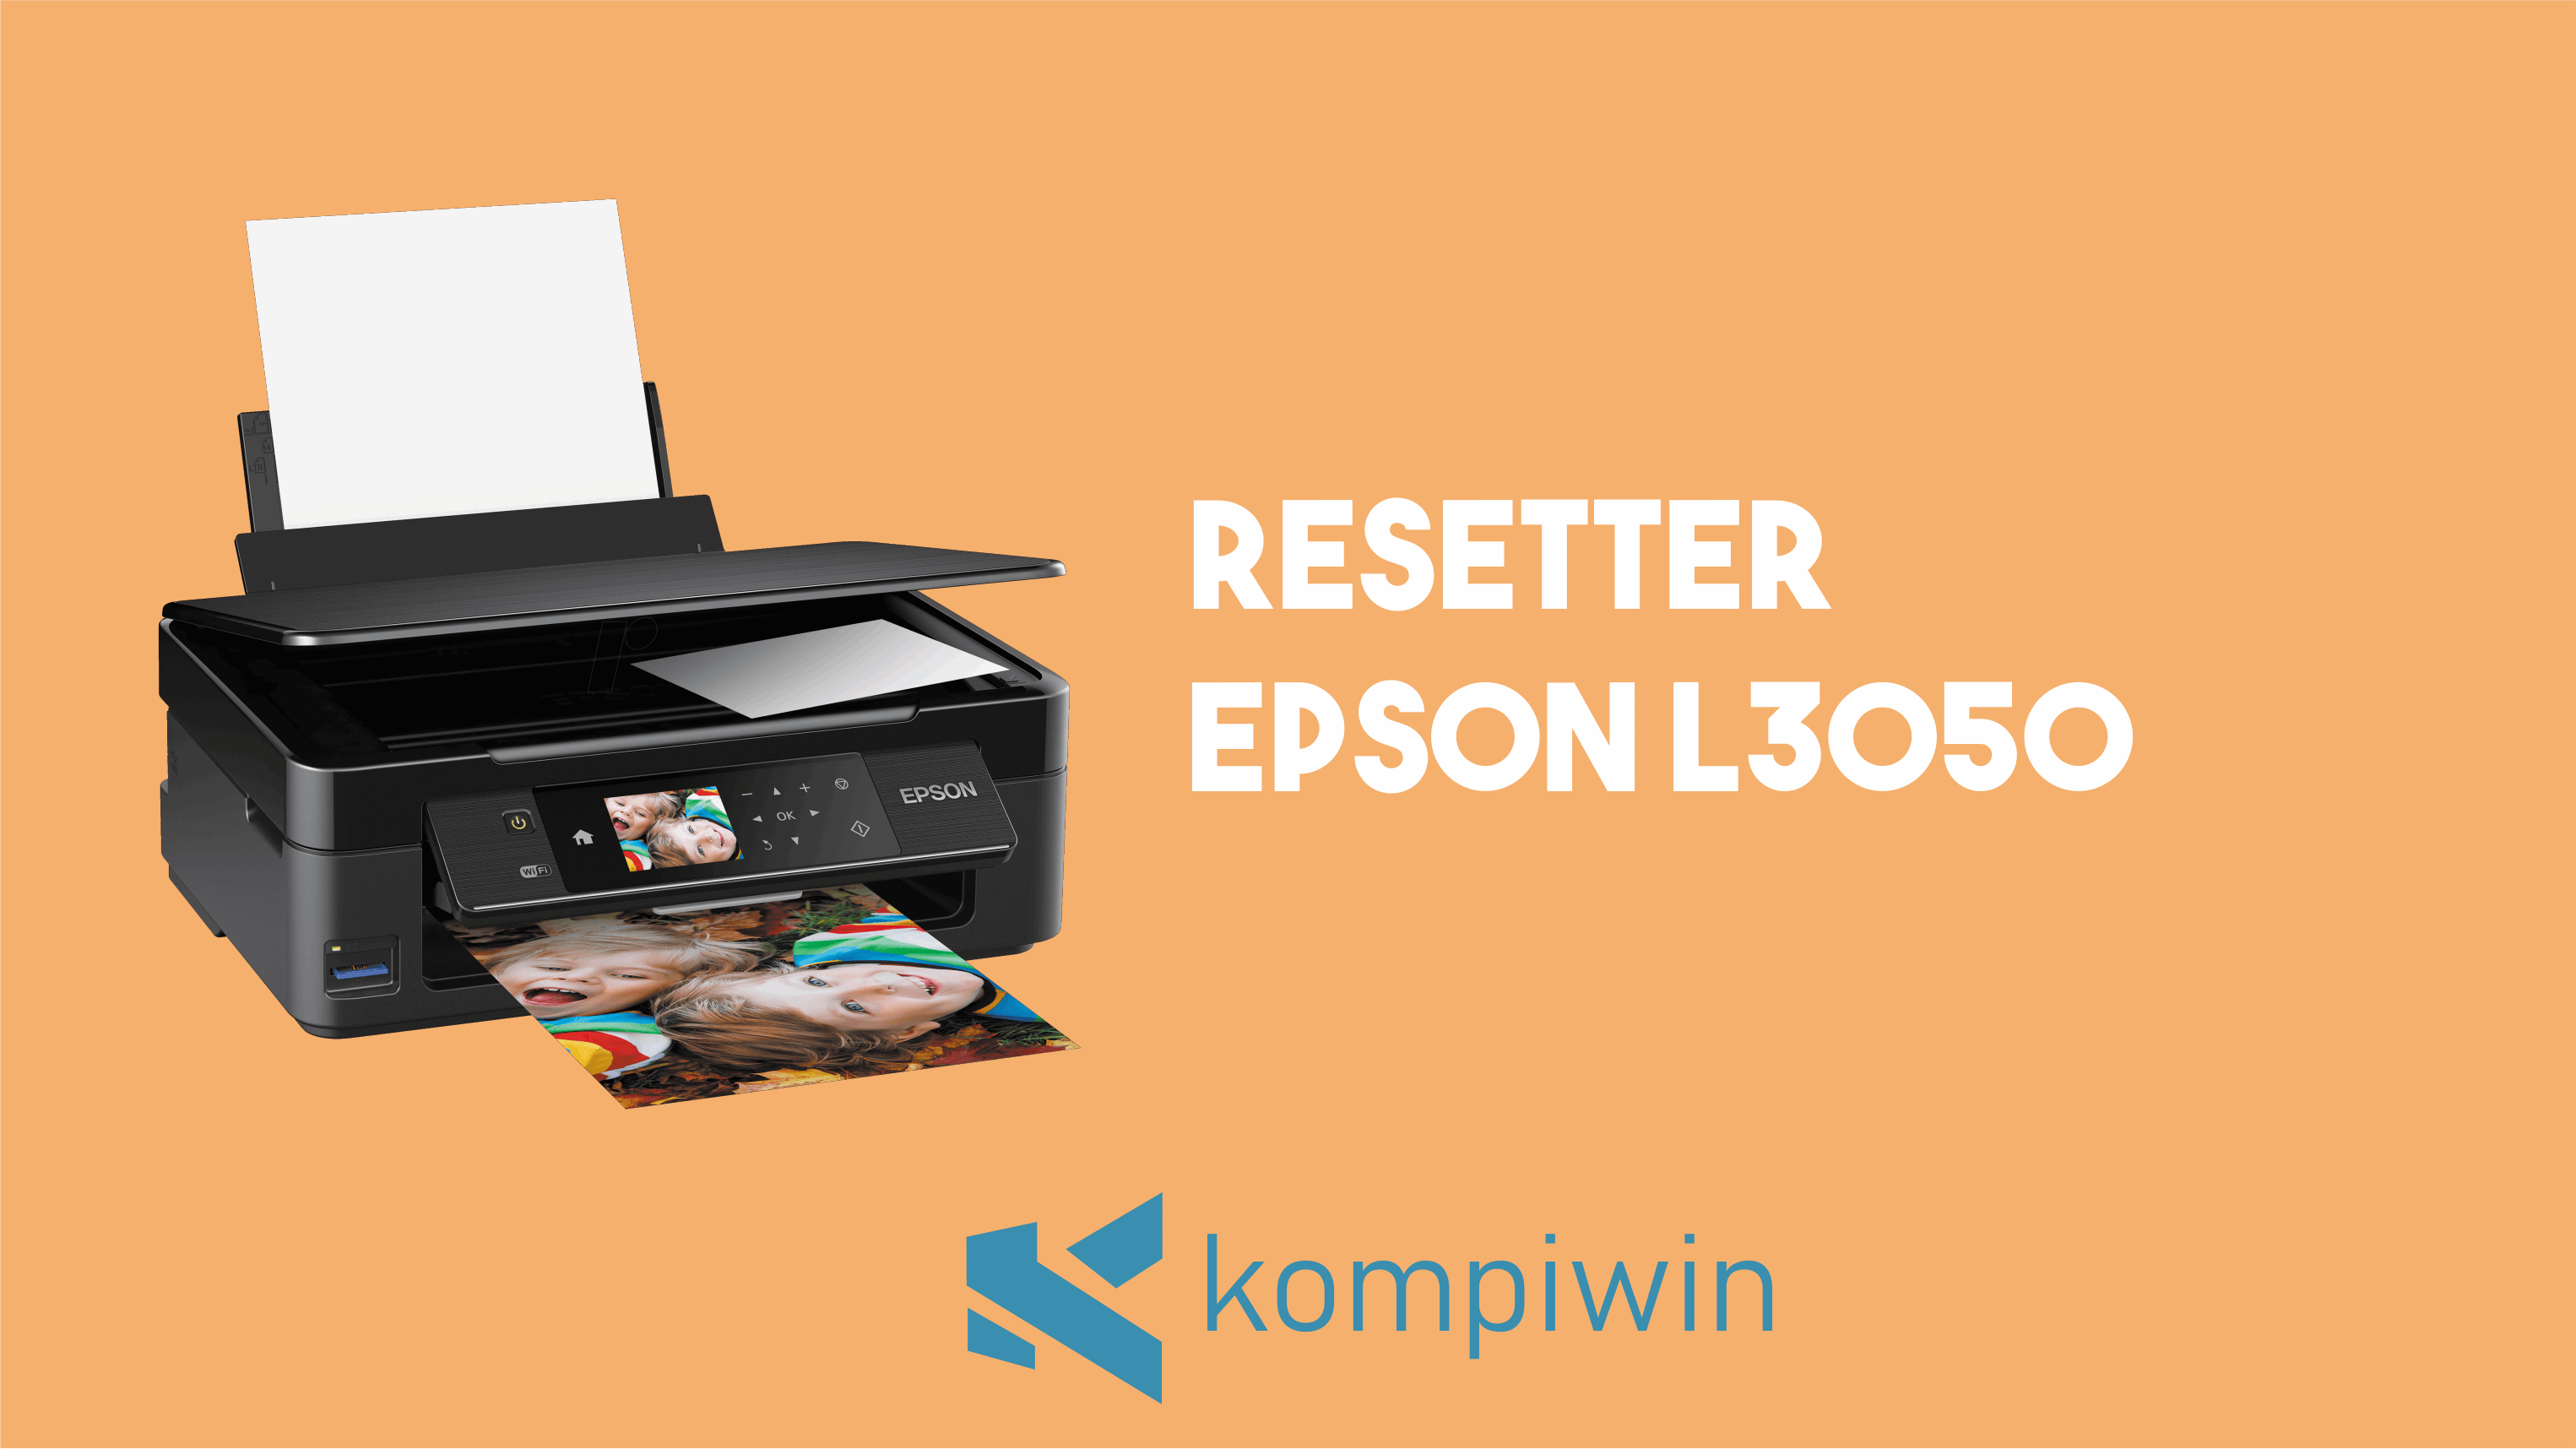 Resetter Epson L3050